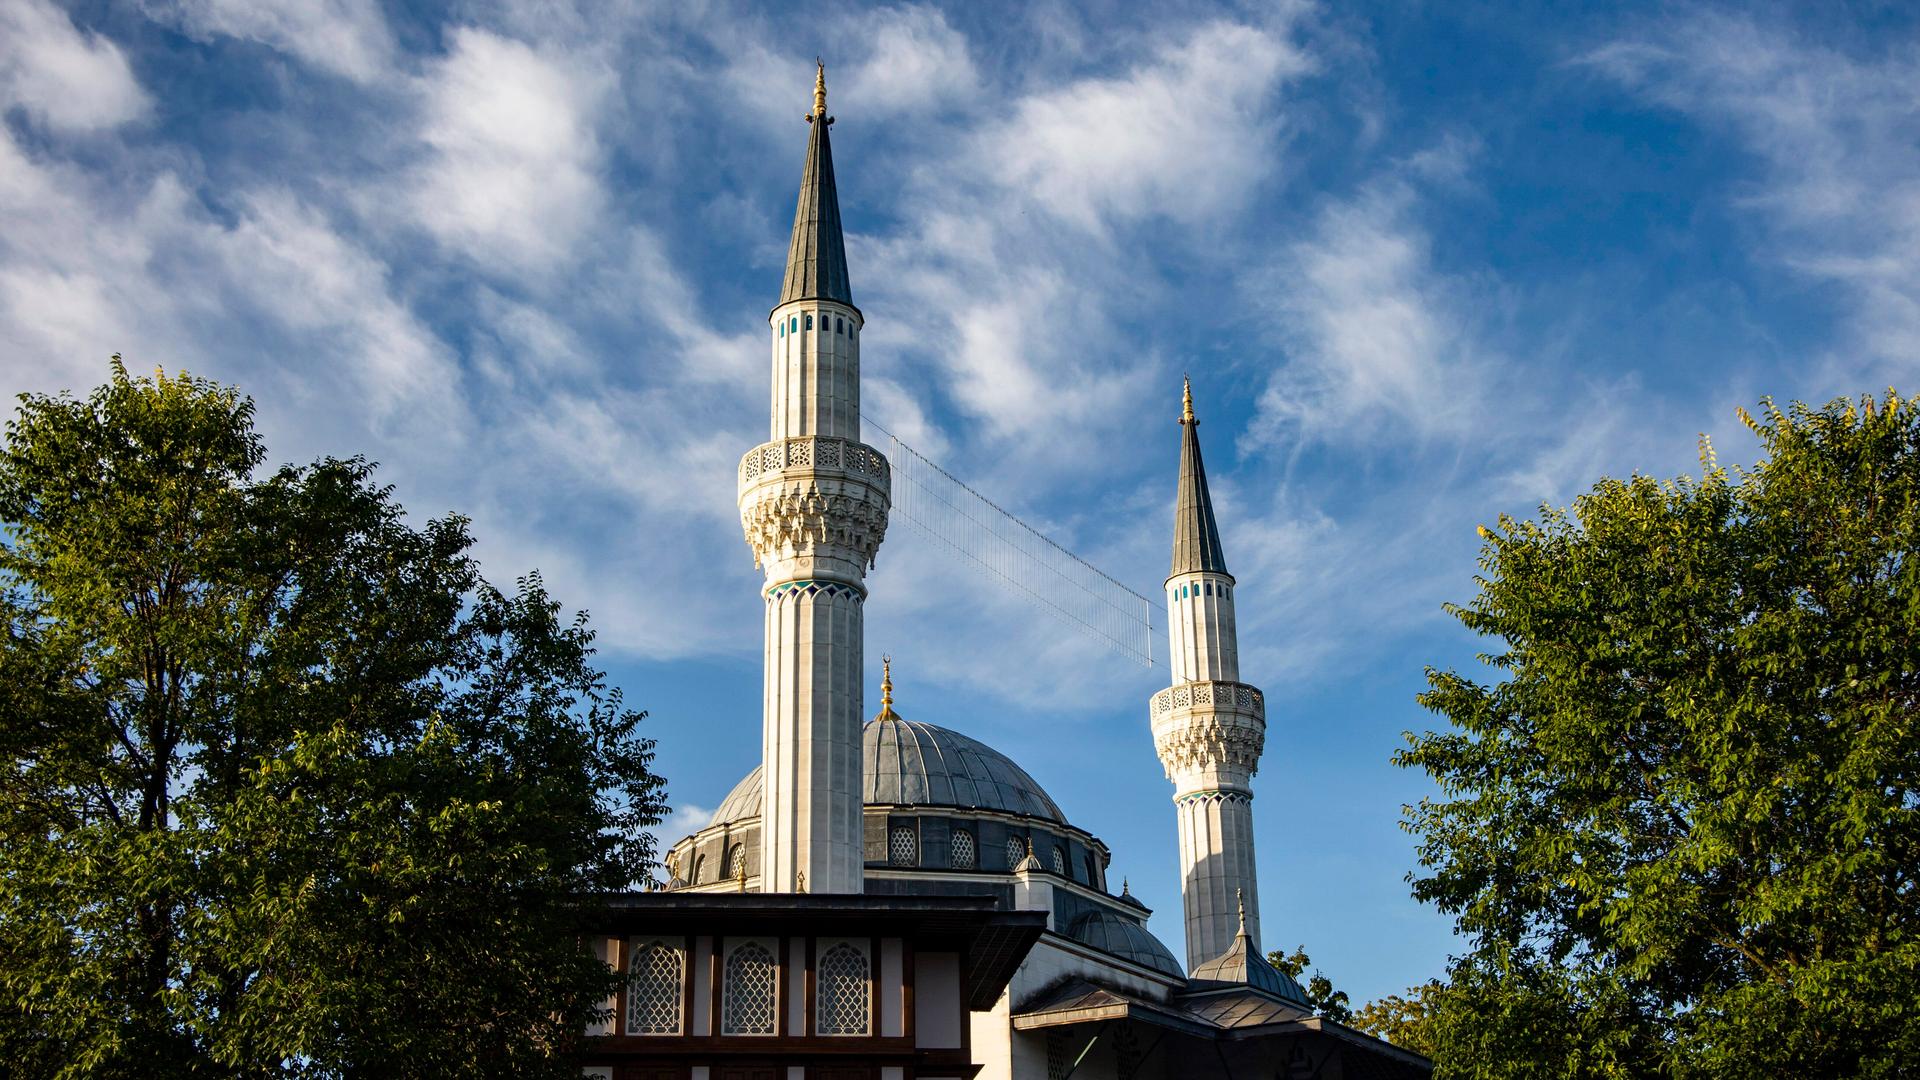 Aussenansicht einer Moschee mit zwei Türmen, umrahmt von Bäumen.